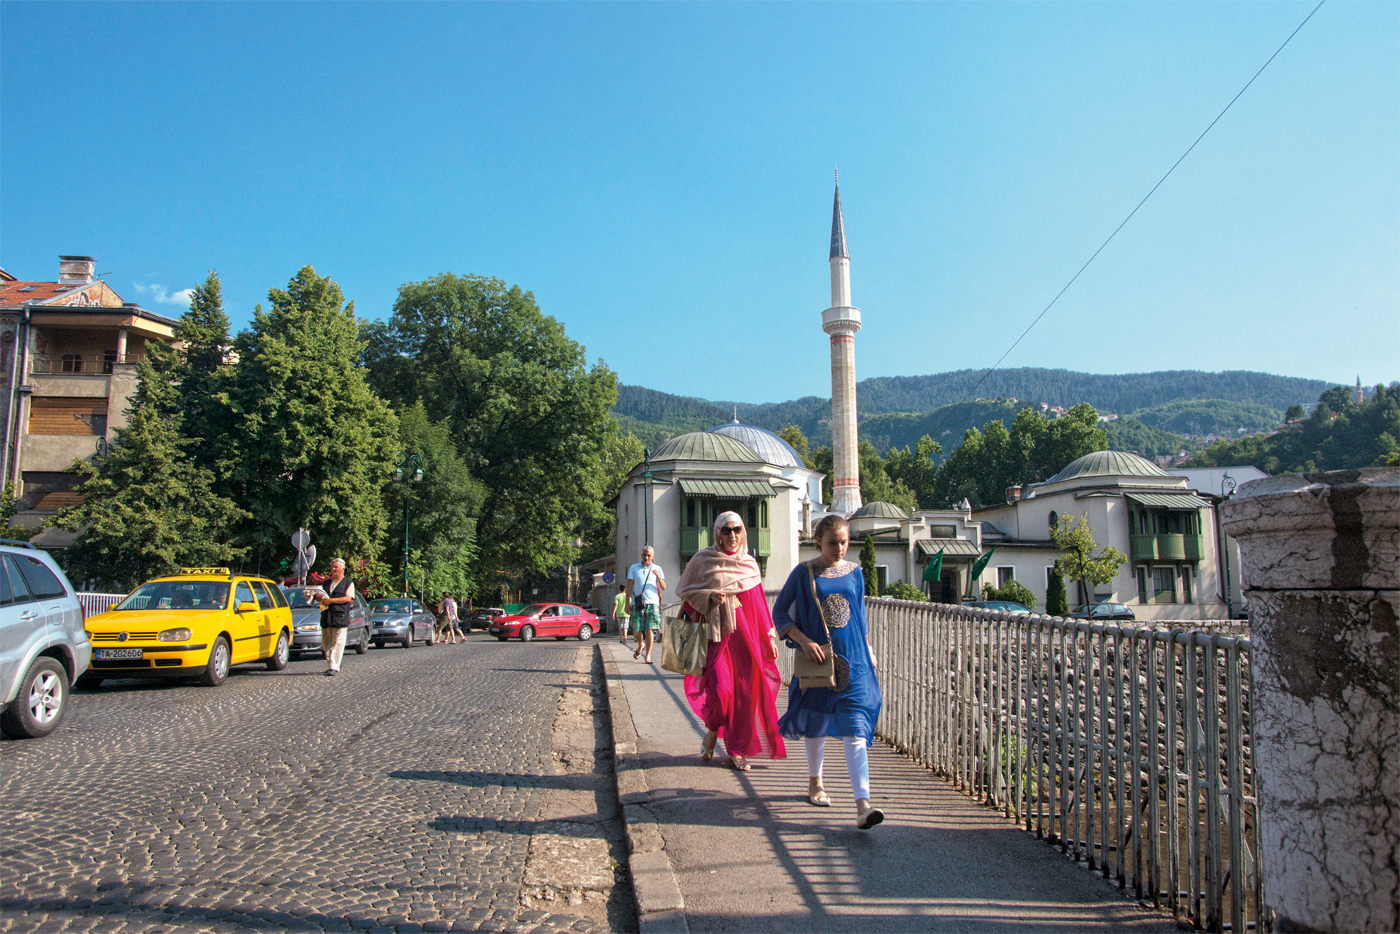 <p>사라예보 사람들은 Jahić과 그의 팀이 저격수의 총알을 피해 다닌 곳인 황제의 다리를 따라 북쪽으로 걸어간다. 1935년부터 1992년까지 도서관이 있었던 술탄의 모스크가 배경으로 서있다.</p>
